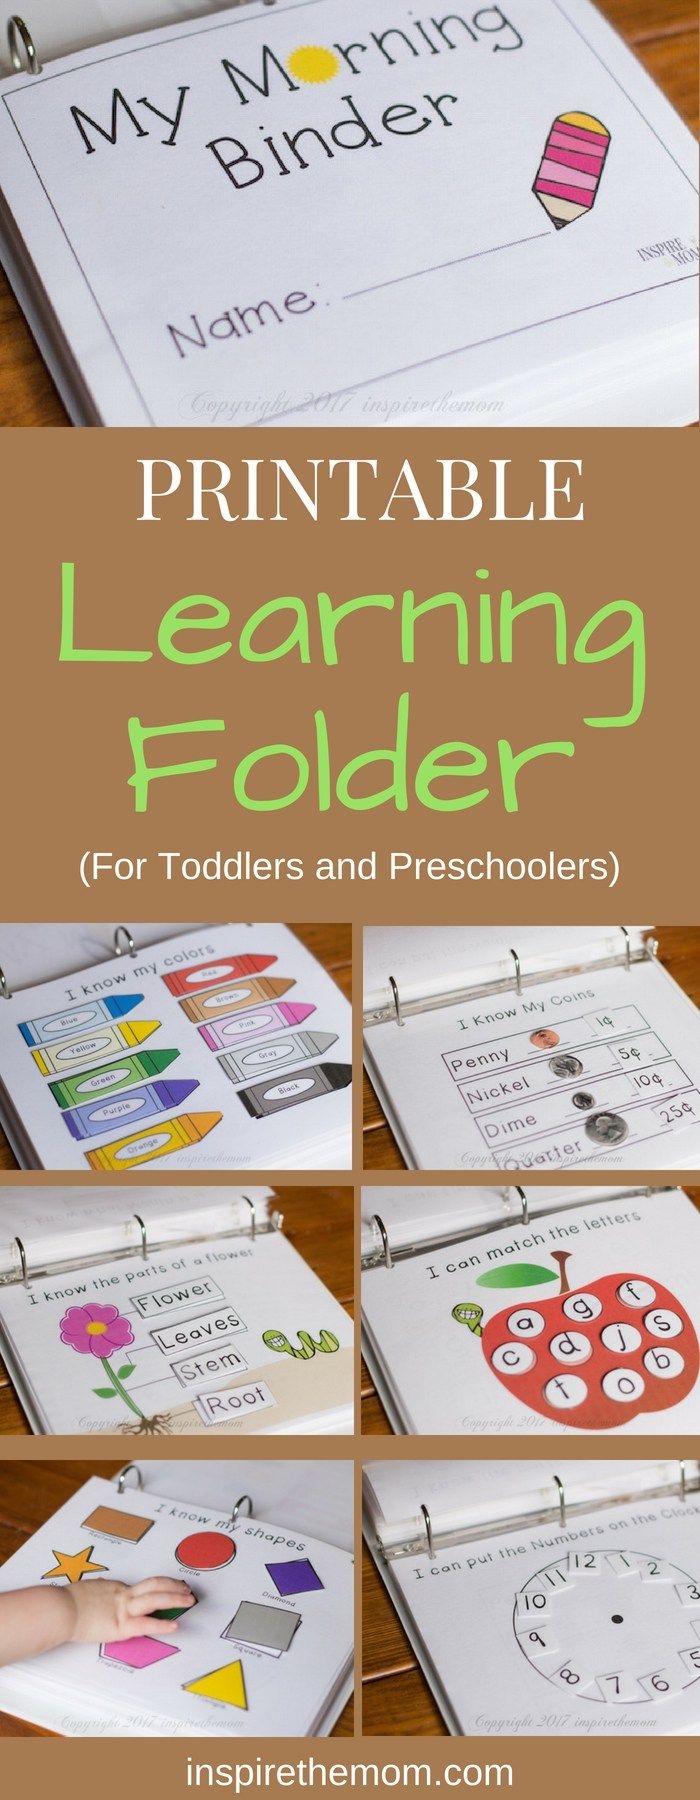 Printable Preschool Learning Folder For The Early Years Preschool Learning Activities Preschool Activities Preschool Learning